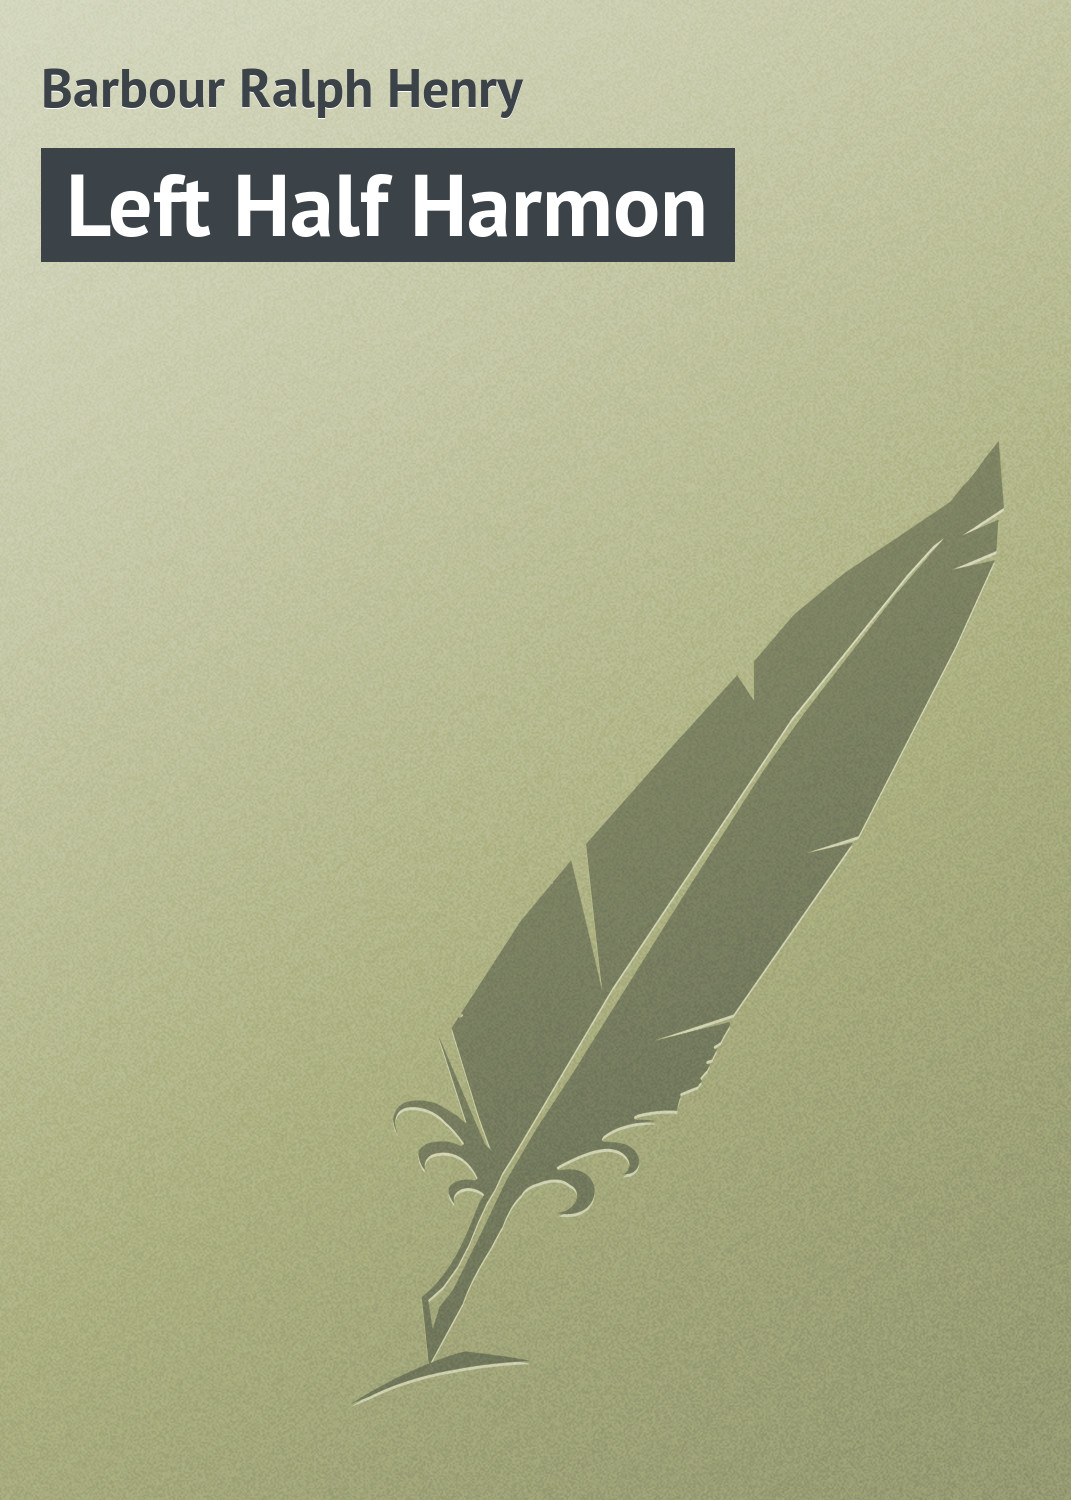 Книга Left Half Harmon из серии , созданная Ralph Barbour, может относится к жанру Зарубежная классика, Зарубежные детские книги. Стоимость электронной книги Left Half Harmon с идентификатором 23166651 составляет 5.99 руб.